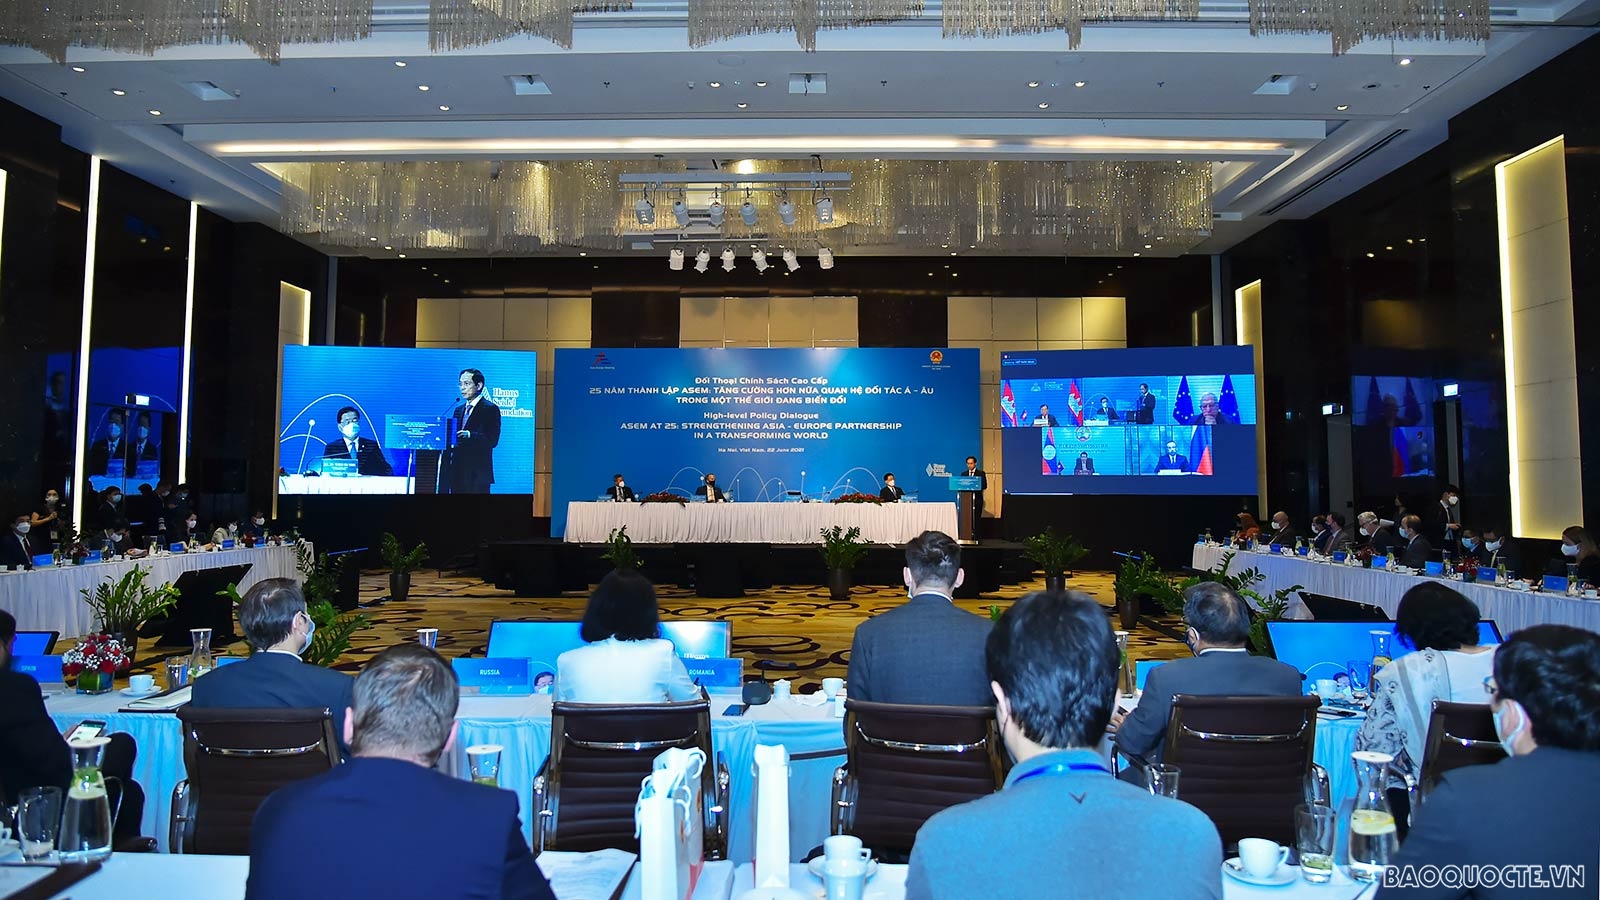 Đây là một trong số rất ít sự kiện đa phương được tổ chức trực tiếp kể từ khi dịch Covid-19 bùng phát. Sáng kiến của Việt Nam về tổ chức Đối thoại chính sách cao cấp ASEM trong dịp kỷ niệm 25 năm thành lập (đề xuất tại Cuộc họp các quan chức cấp cao ASEM, tháng 3/2021) là hoạt động quan trọng của ASEM trong năm 2021 và được các thành viên đánh giá cao, ủng hộ mạnh mẽ.